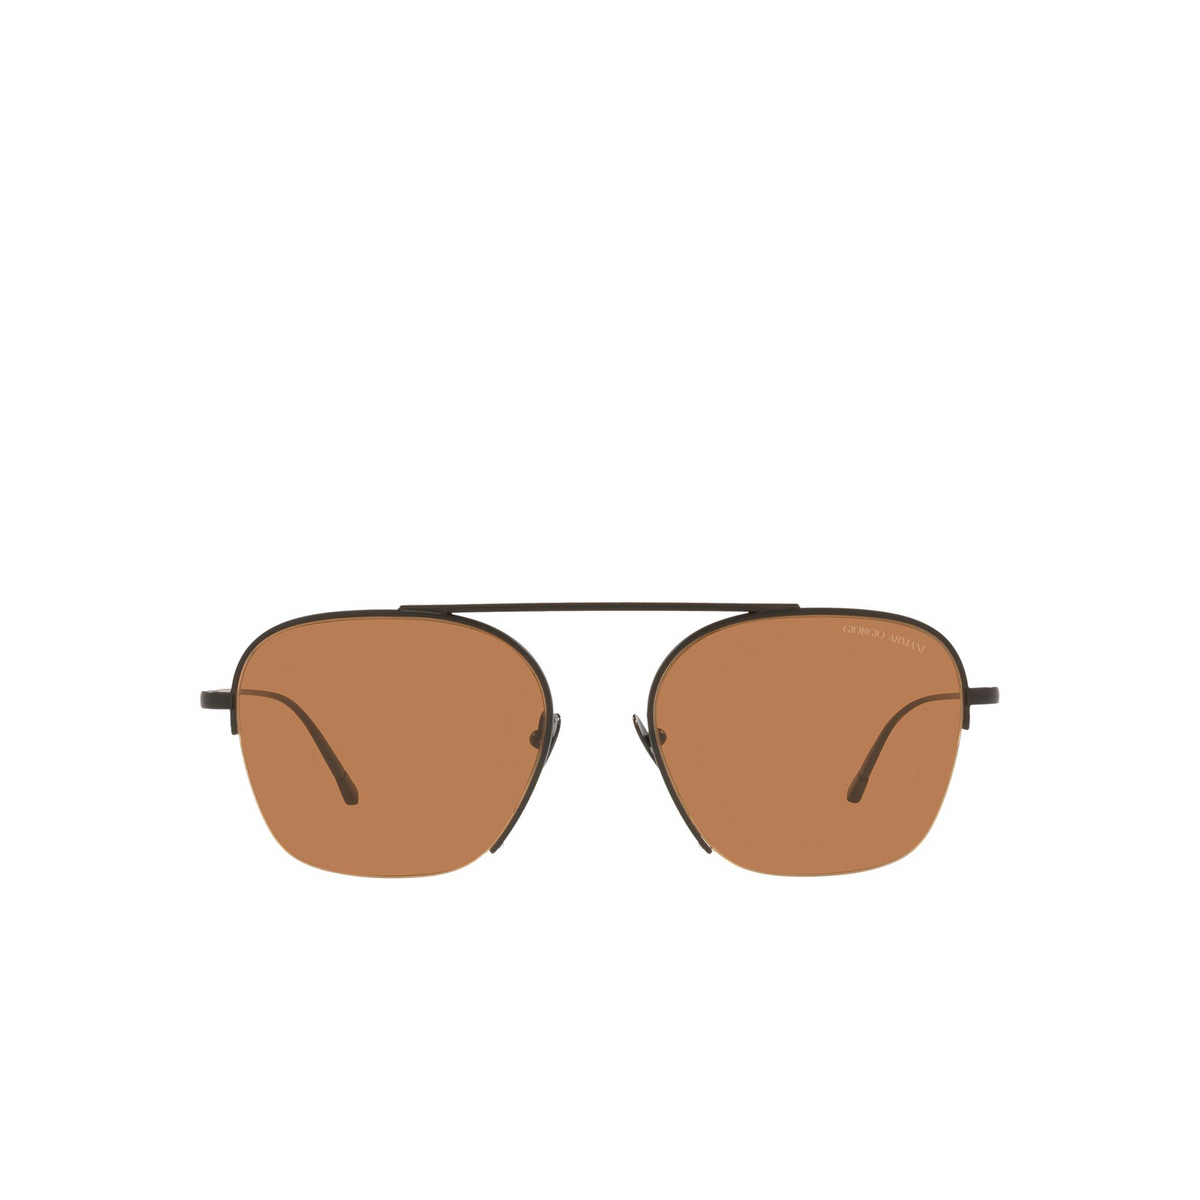 Giorgio Armani® Square Sunglasses: AR6124 color Matte Black 300173 - front view.